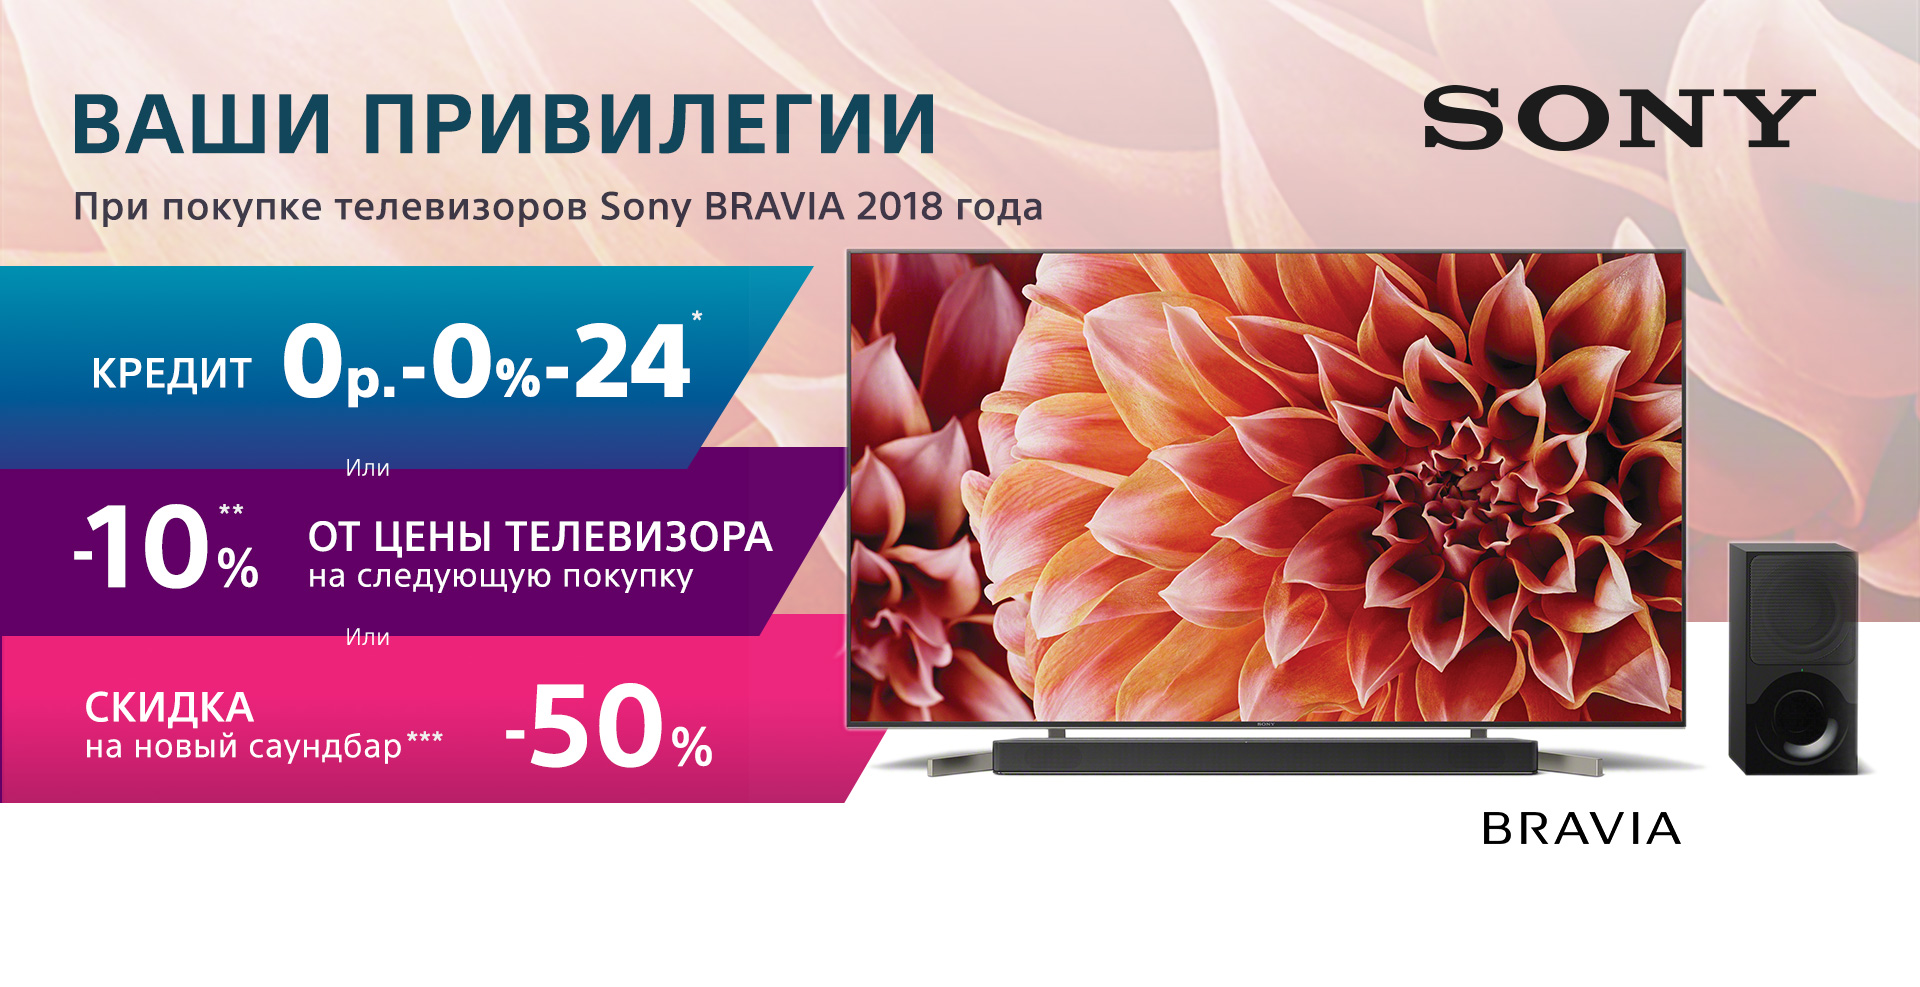 Ваши привилегии при покупке телевизоров Sony BRAVIA 2018 года